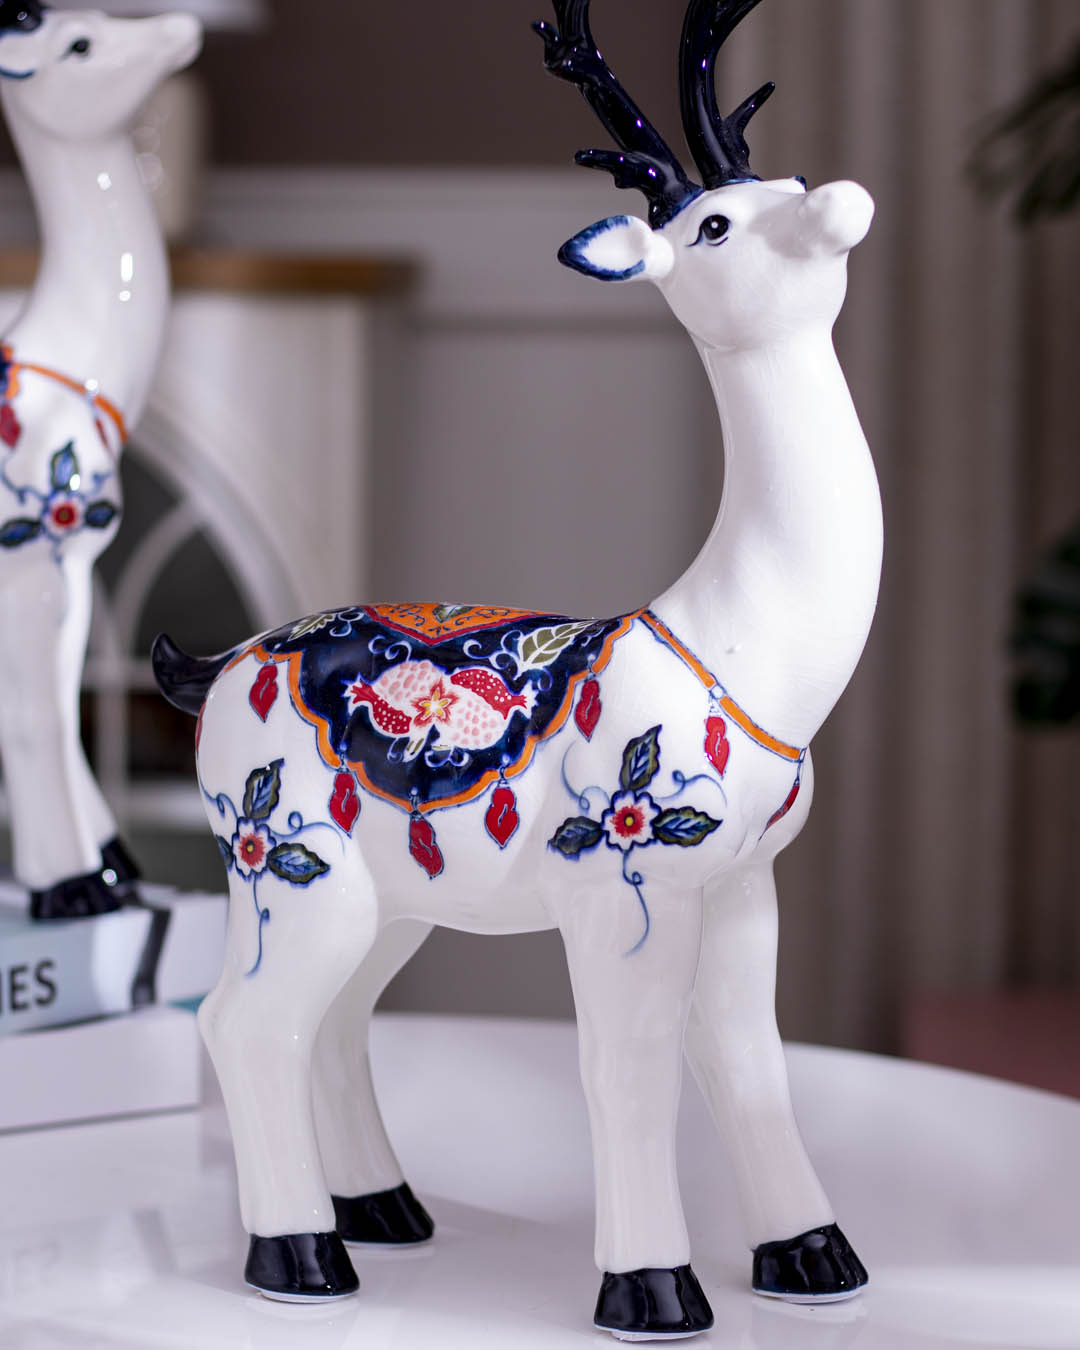 The Reindeer Porcelain Sculptures - Set of 2